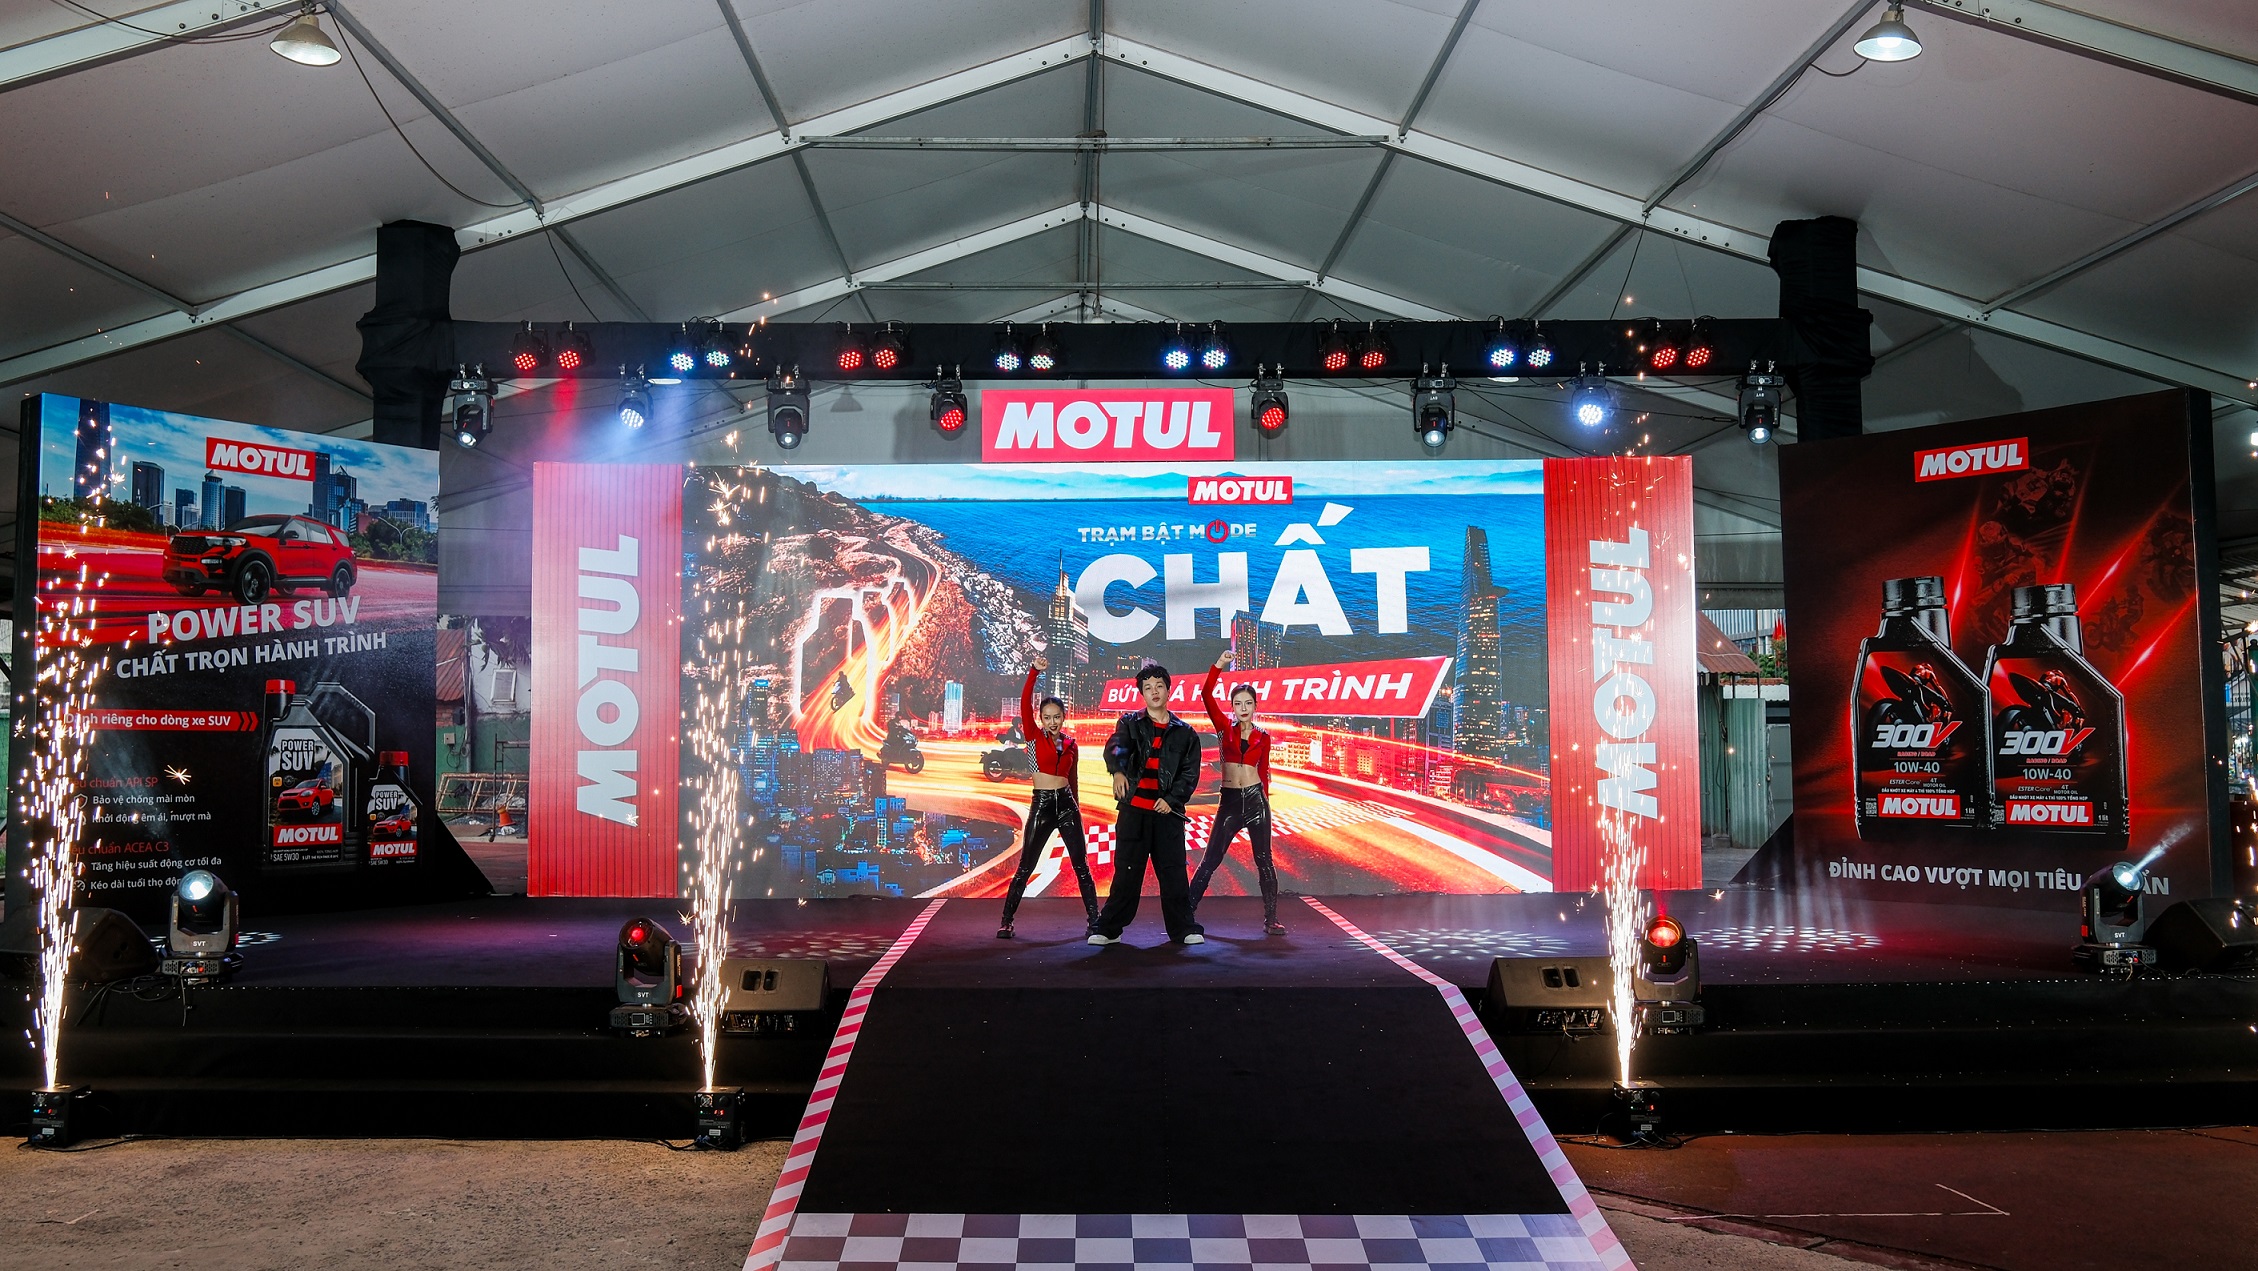 Motul gây ấn tượng với sự kiện xuyên Việt lớn nhất năm, thêm sản phẩm mới